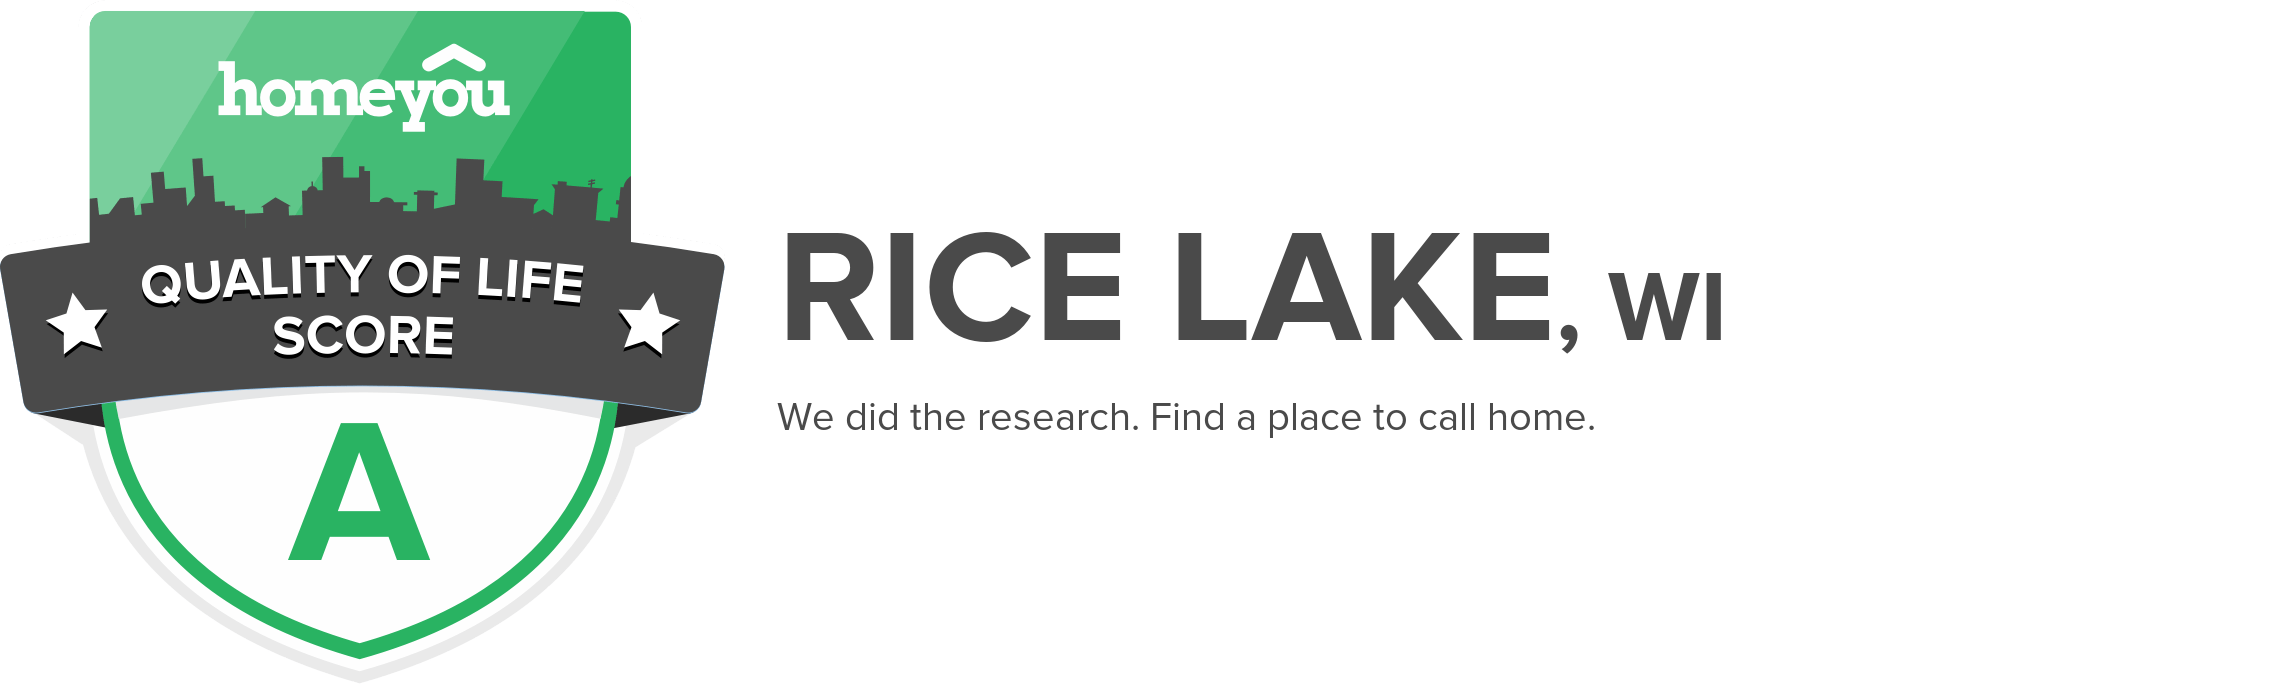 Rice Lake, WI